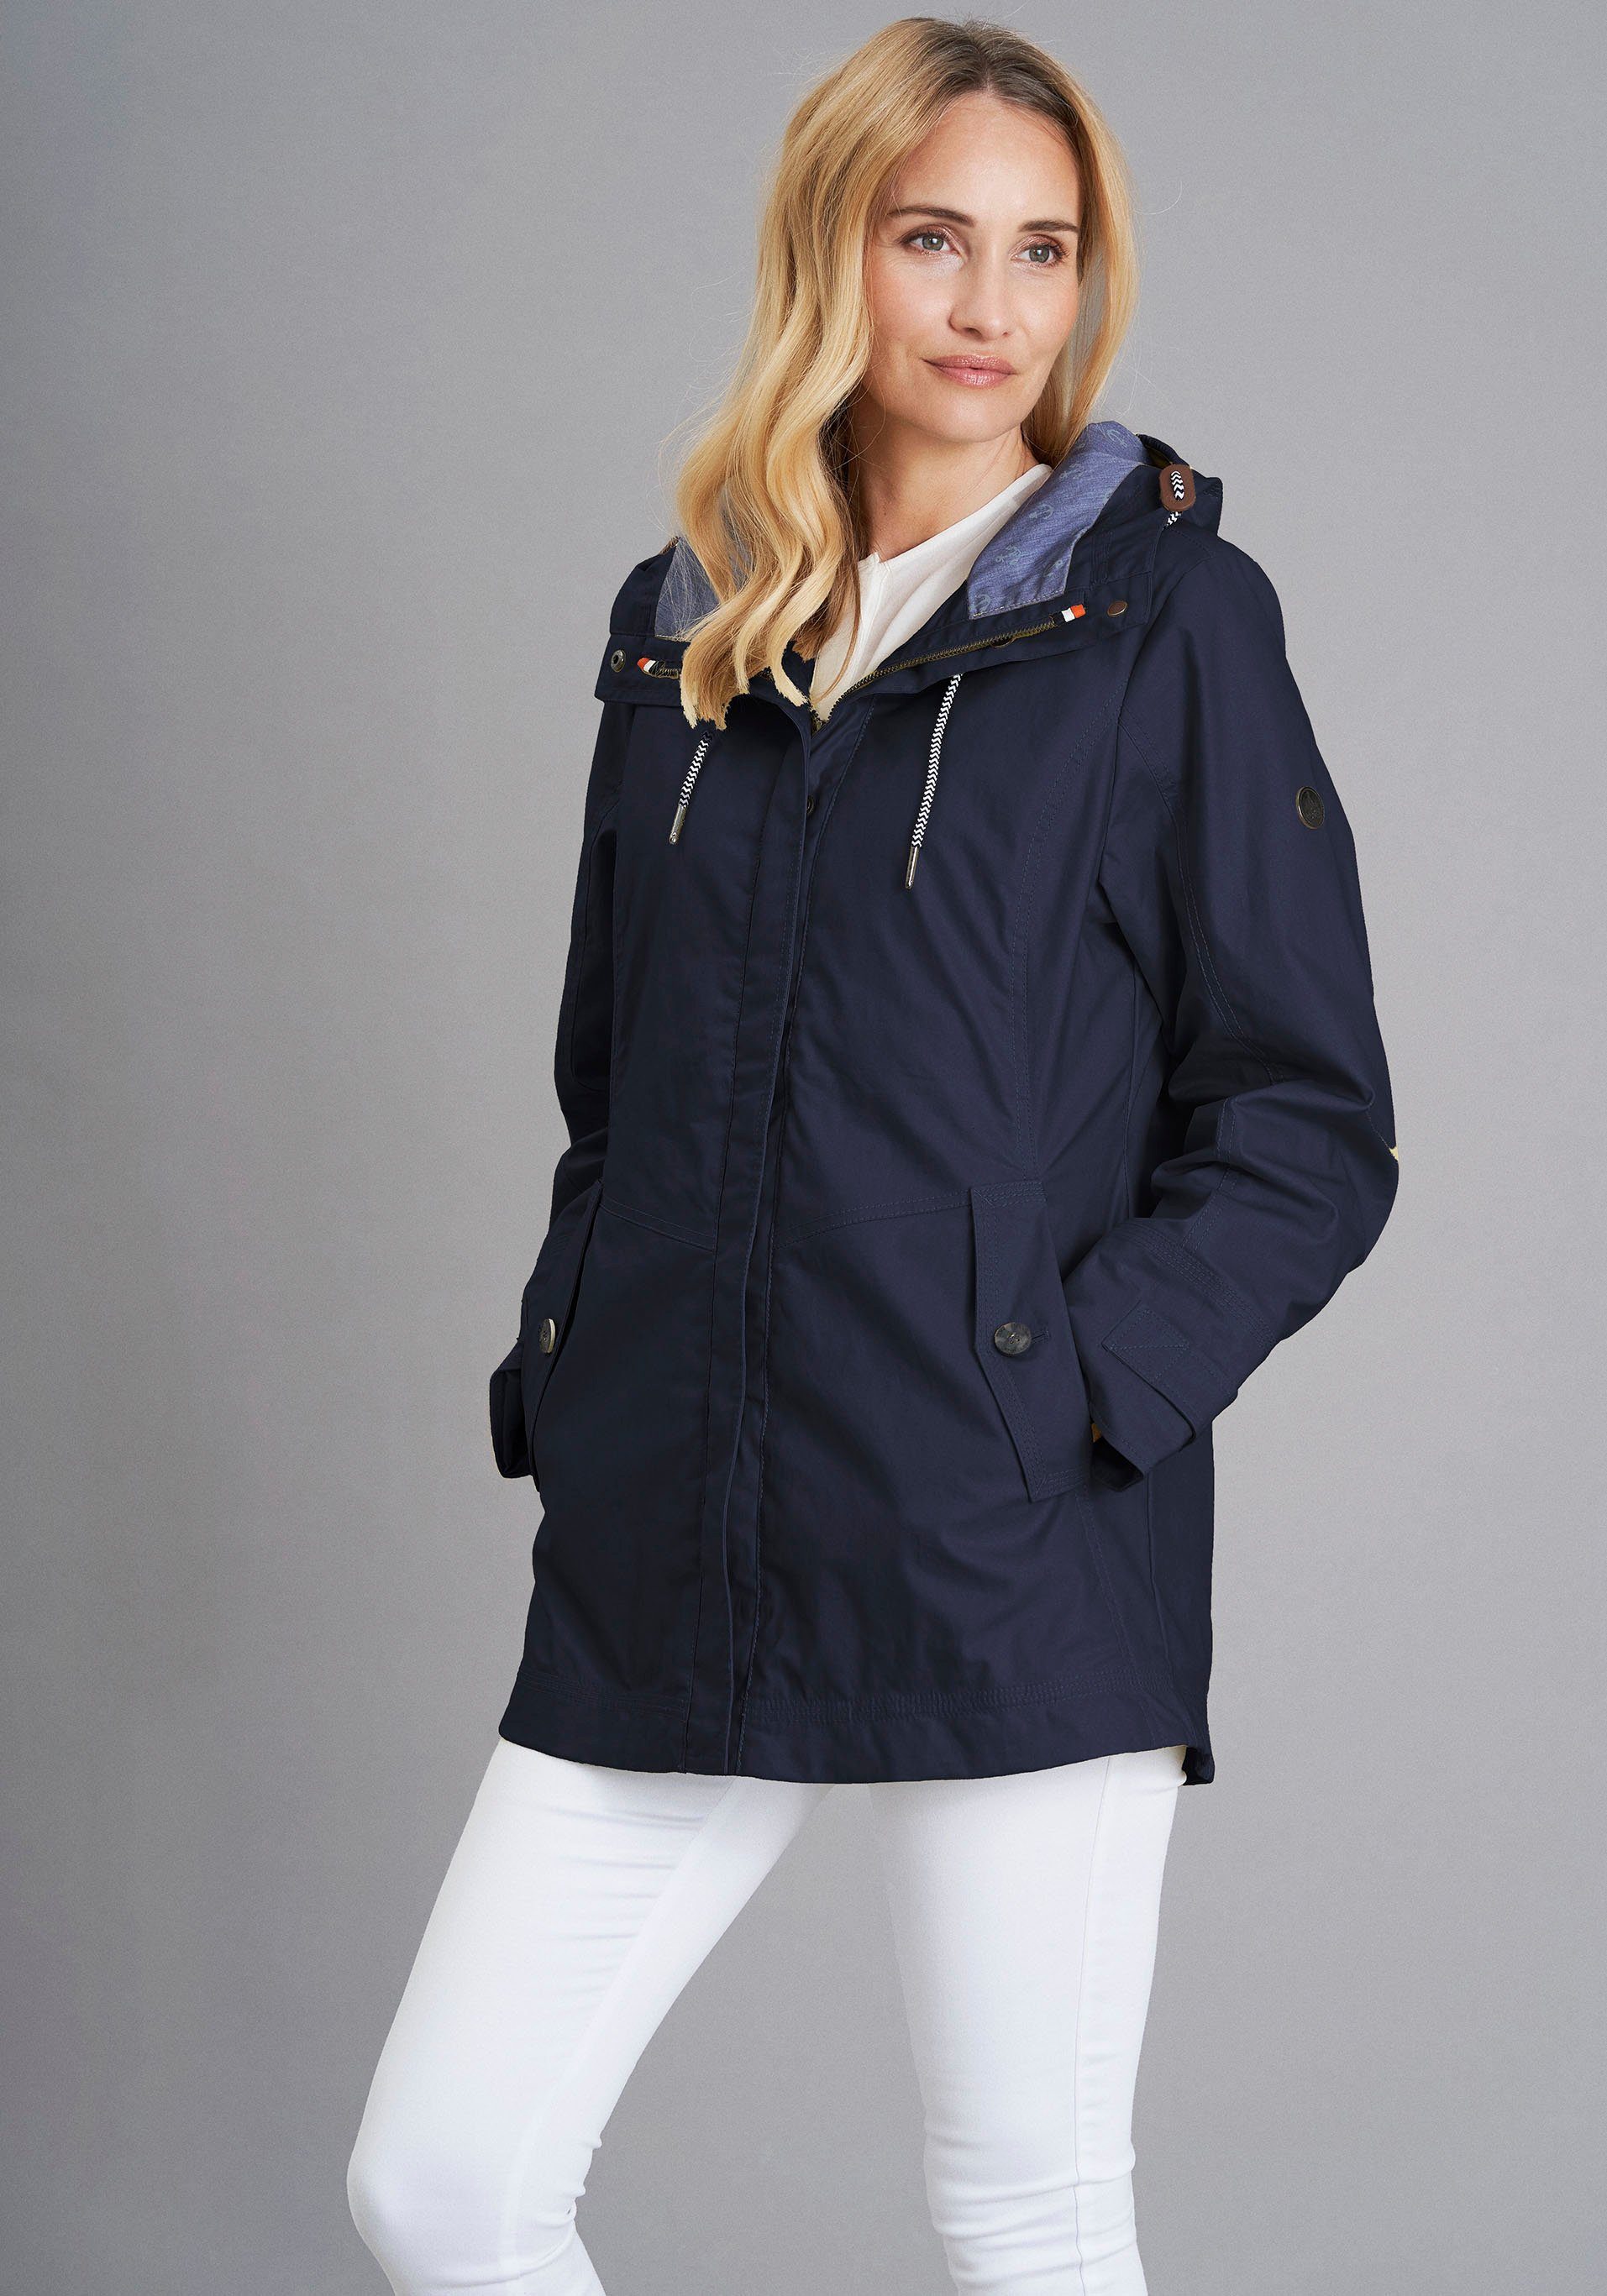 Jacken » Passend zu Wetter und Style | OTTO